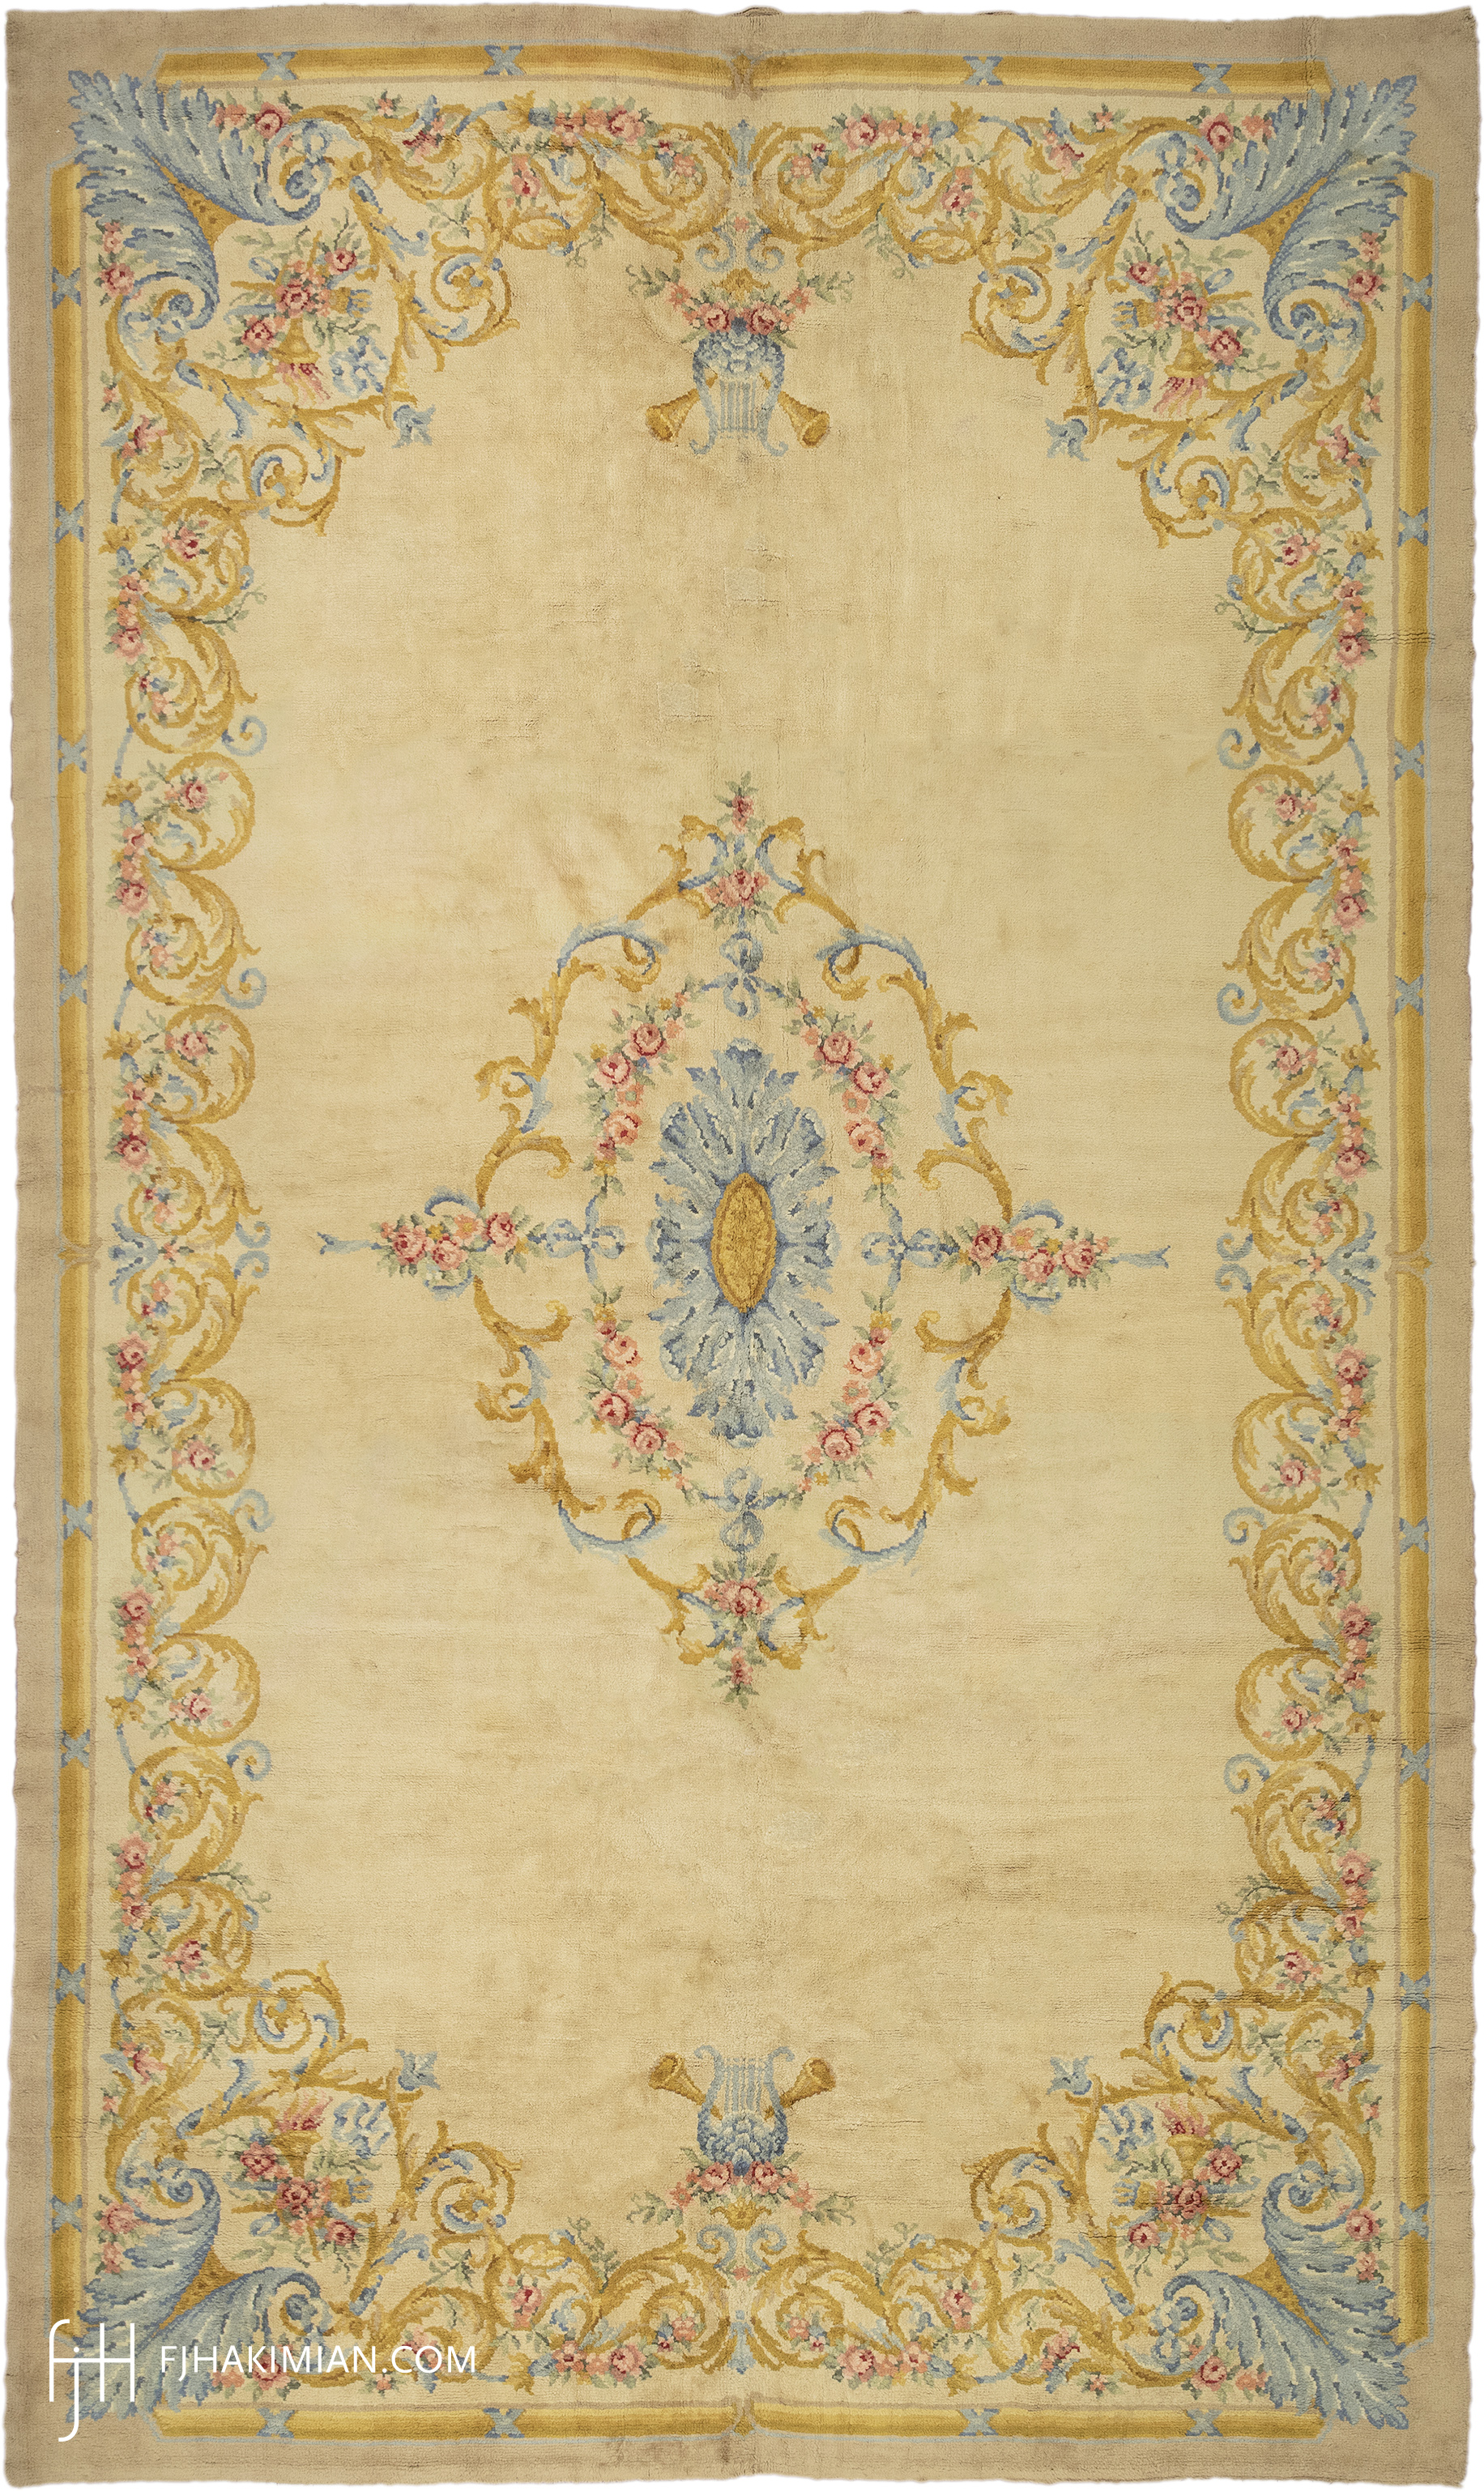 FJ Hakimian | 03019 | Vintage Carpet